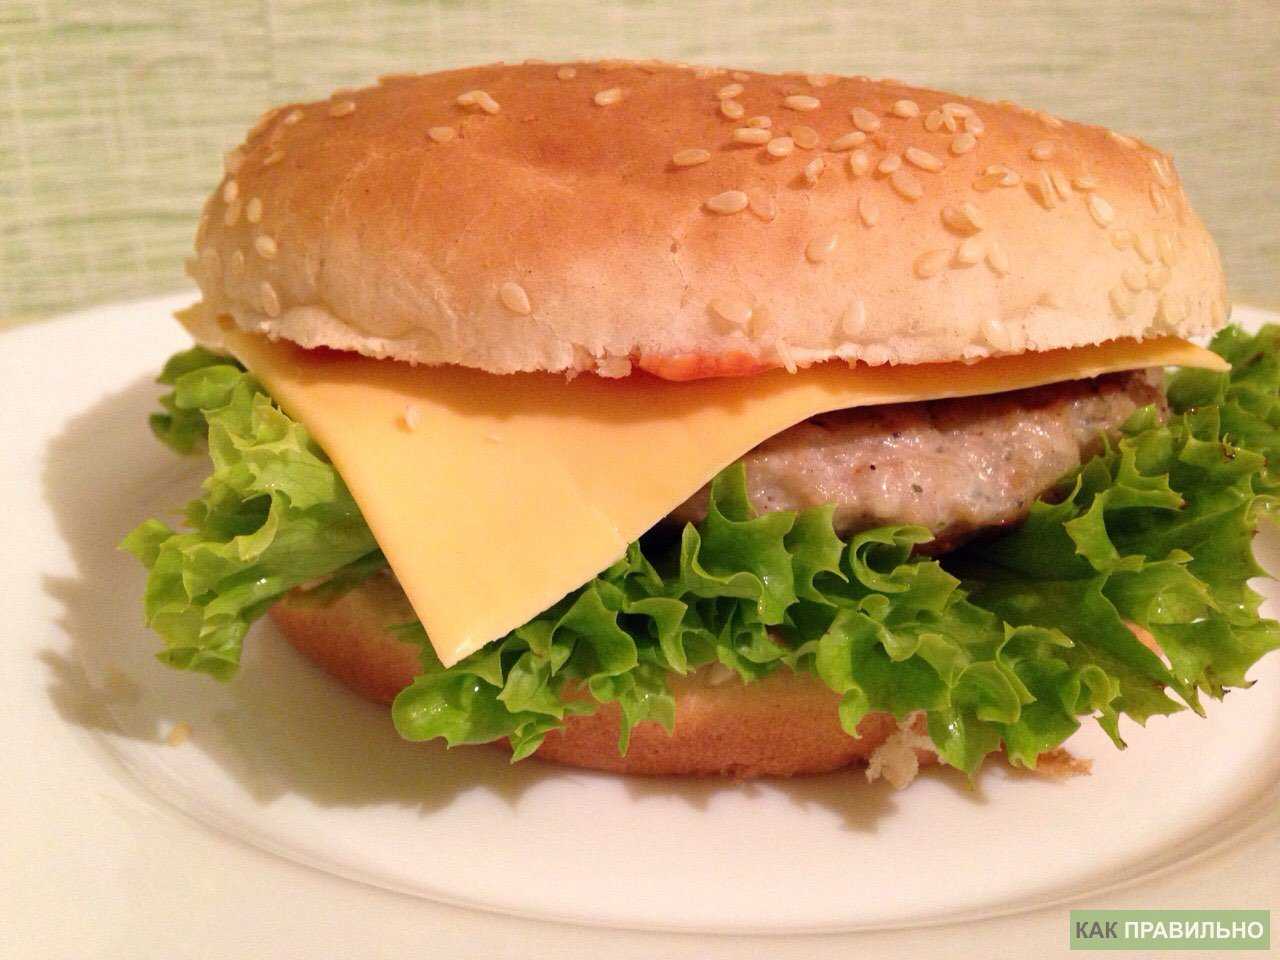 Как сделать гамбургер в домашних условиях - основные правила и пошаговые рецепты